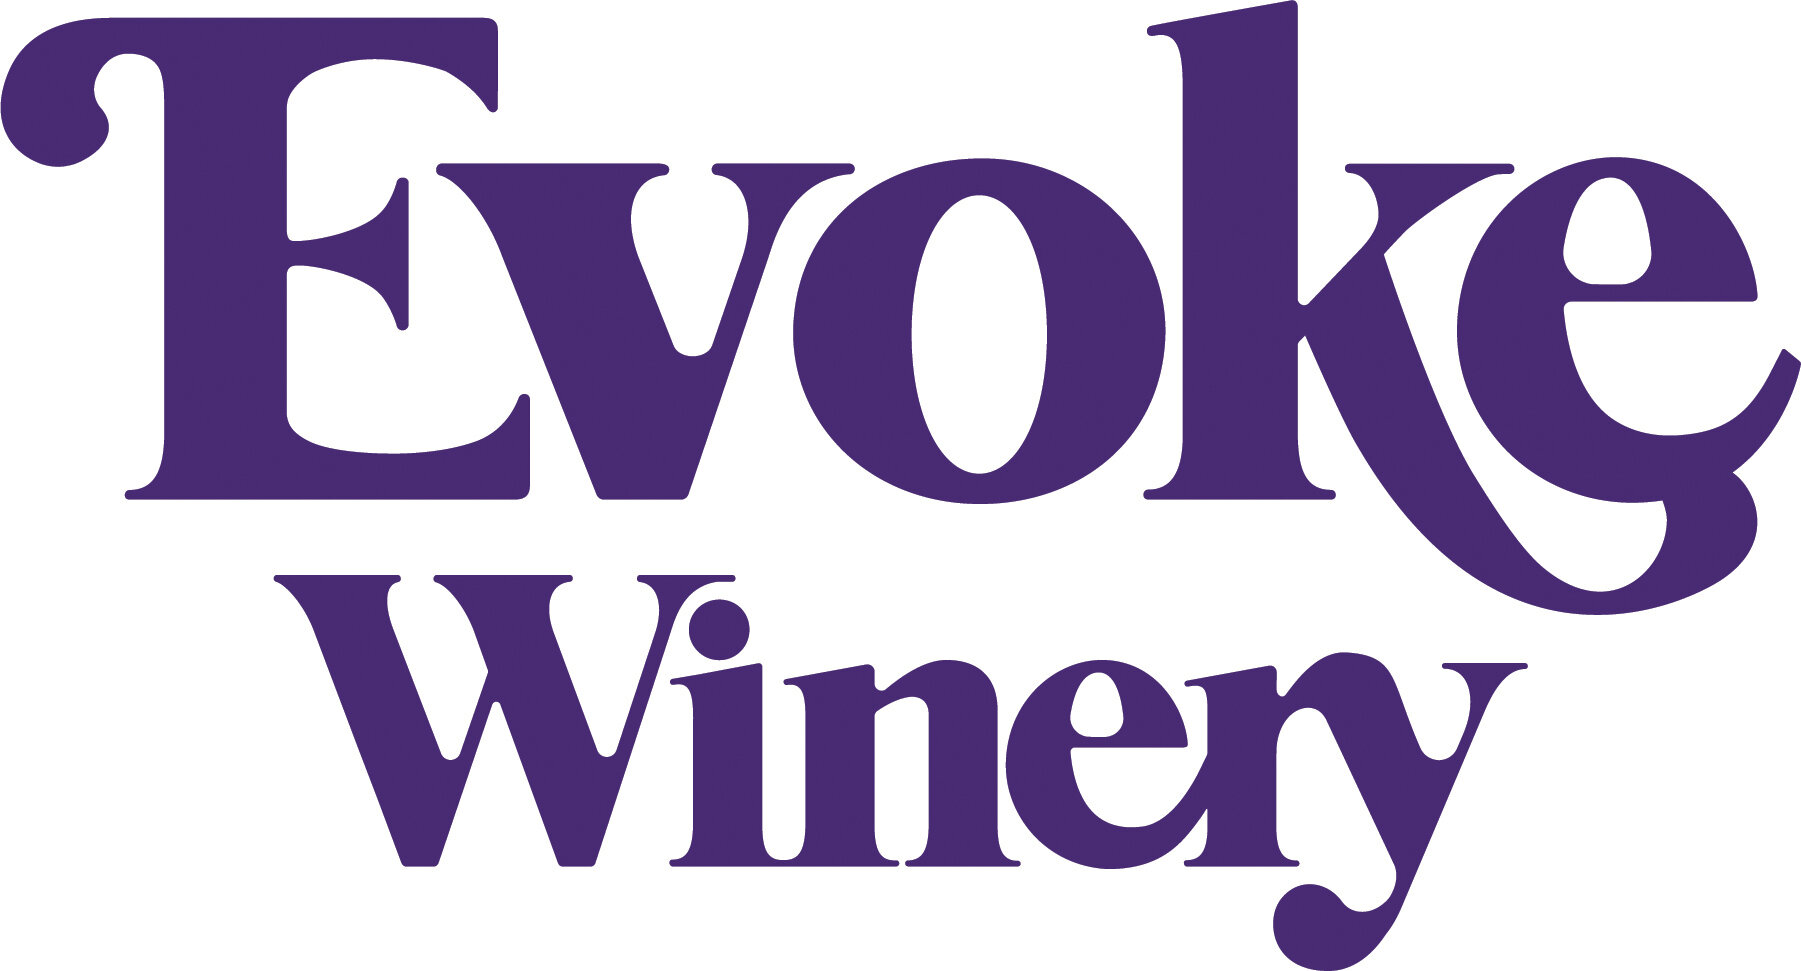 Evoke-Stacked Logo.jpg